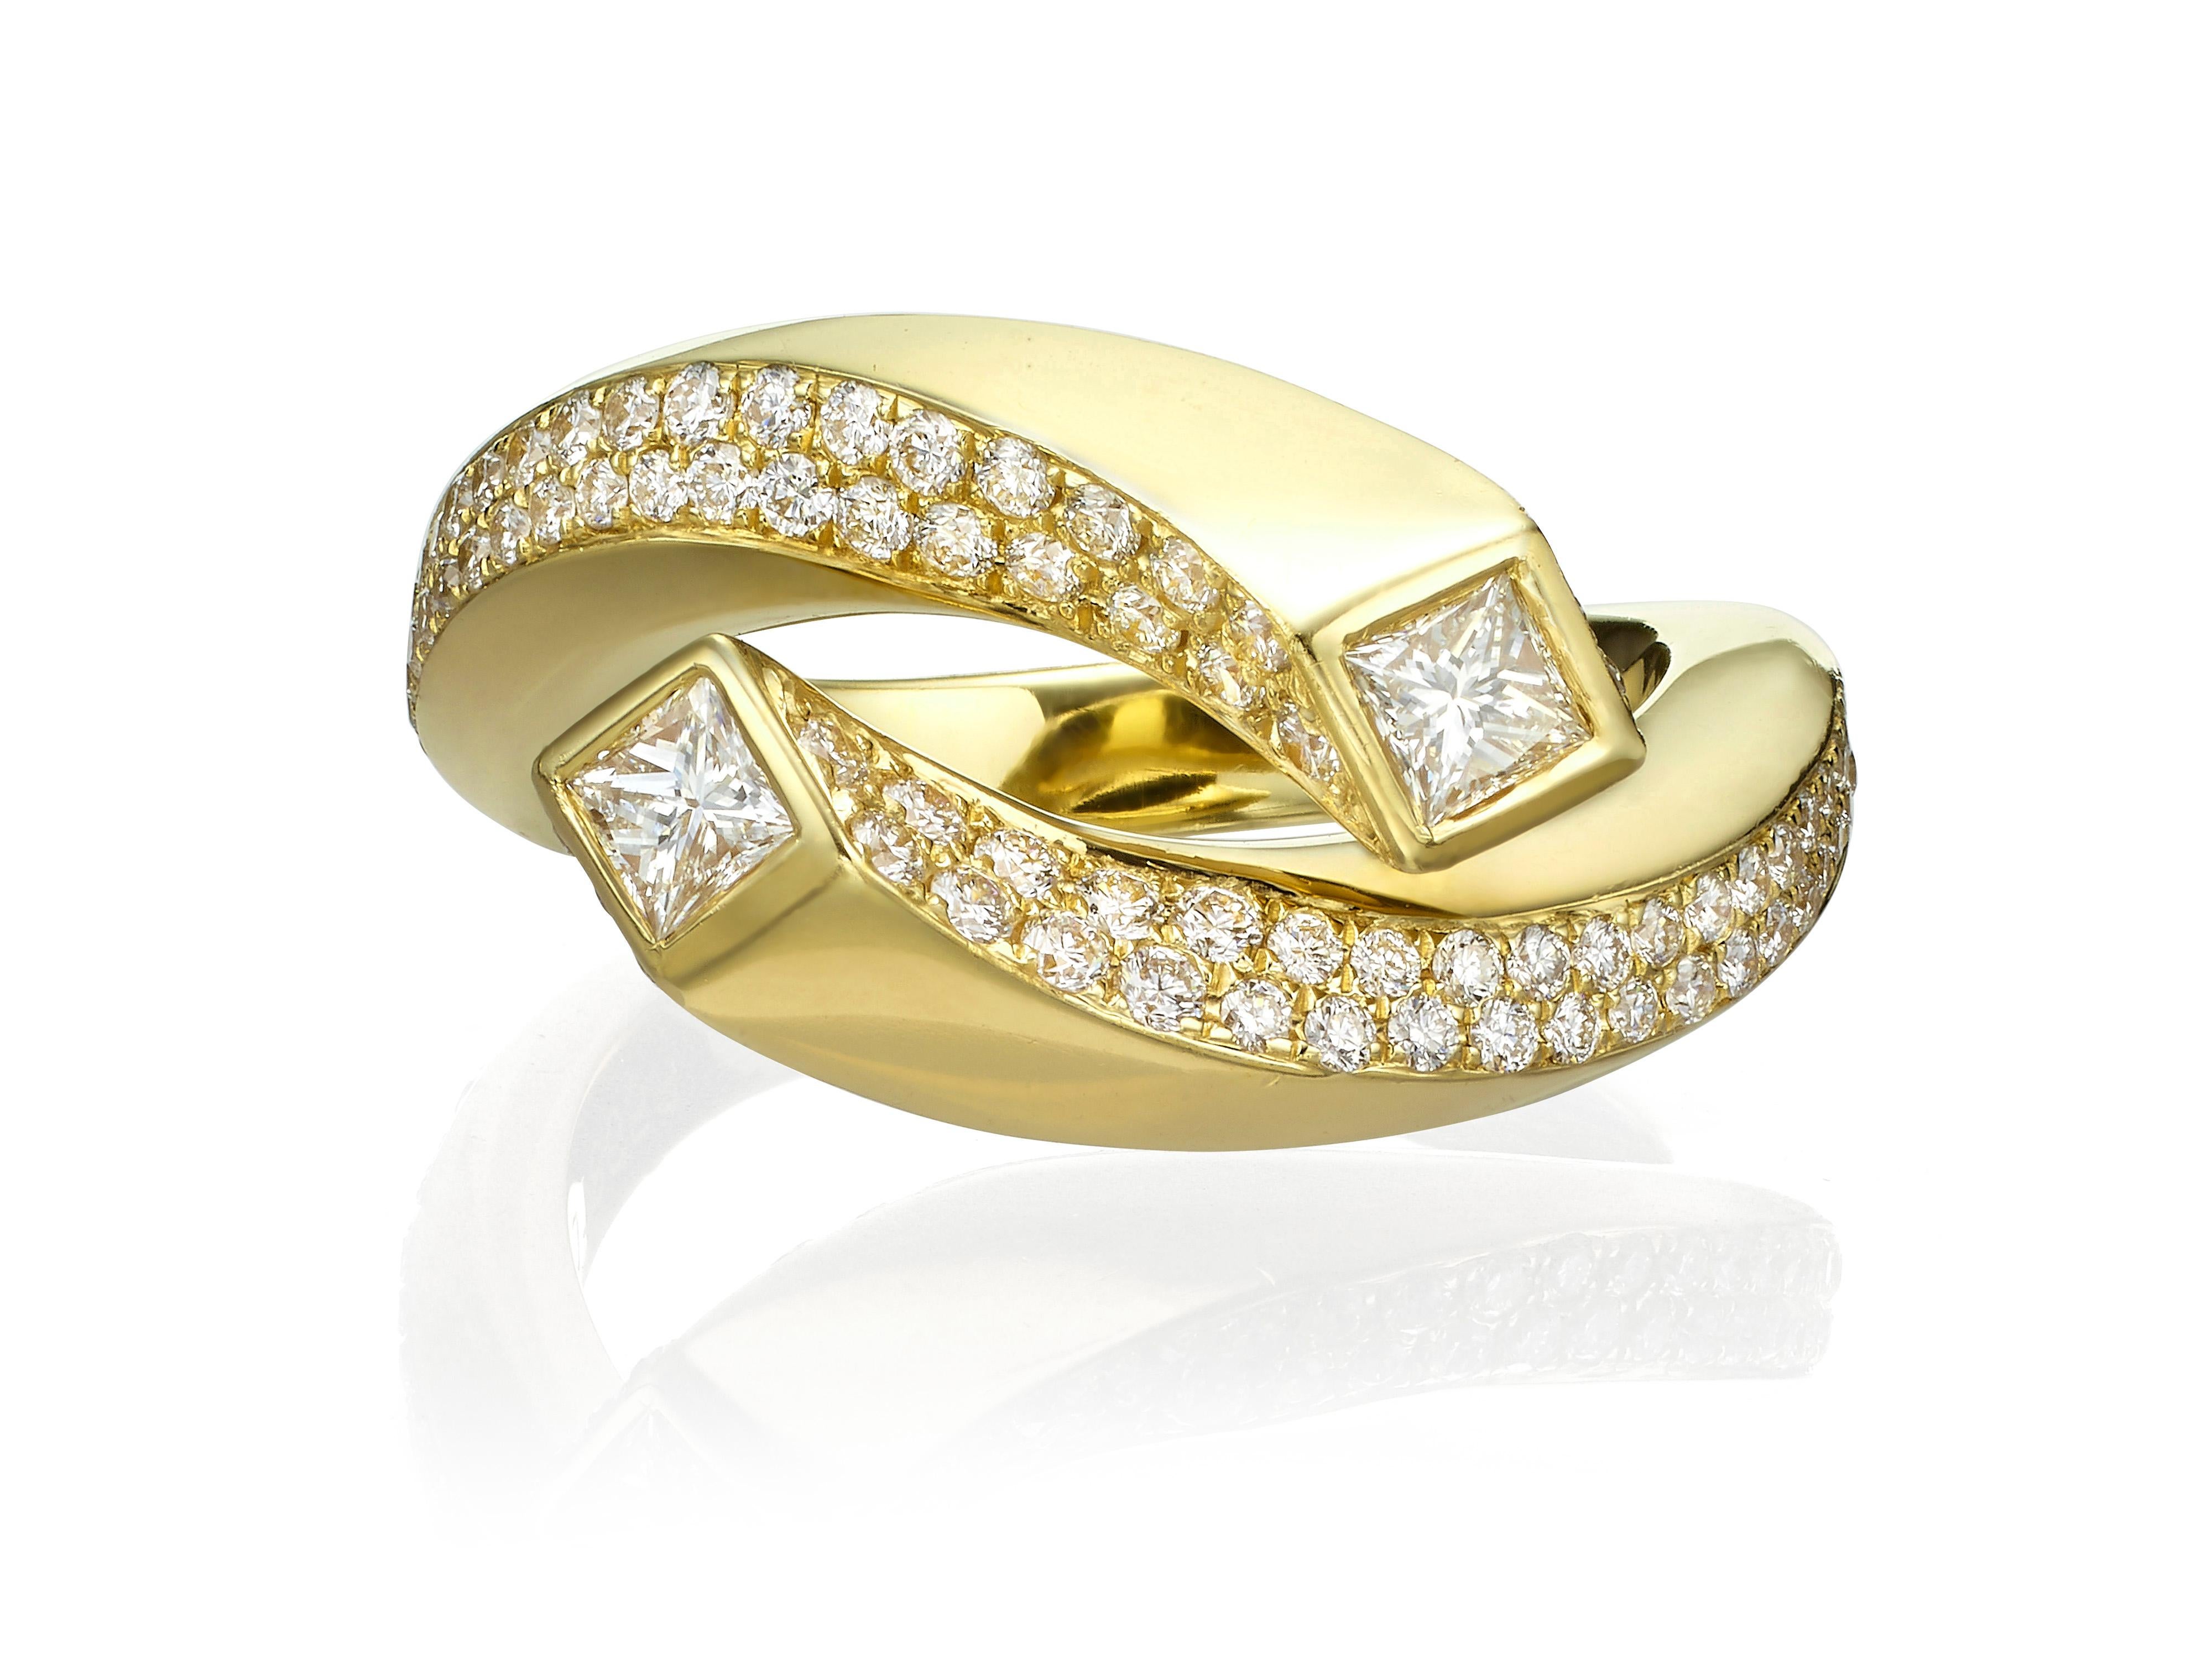 Contemporary 0.99 Carat Princess Cut Diamond 18 Karat Yellow Gold Engagement Ring